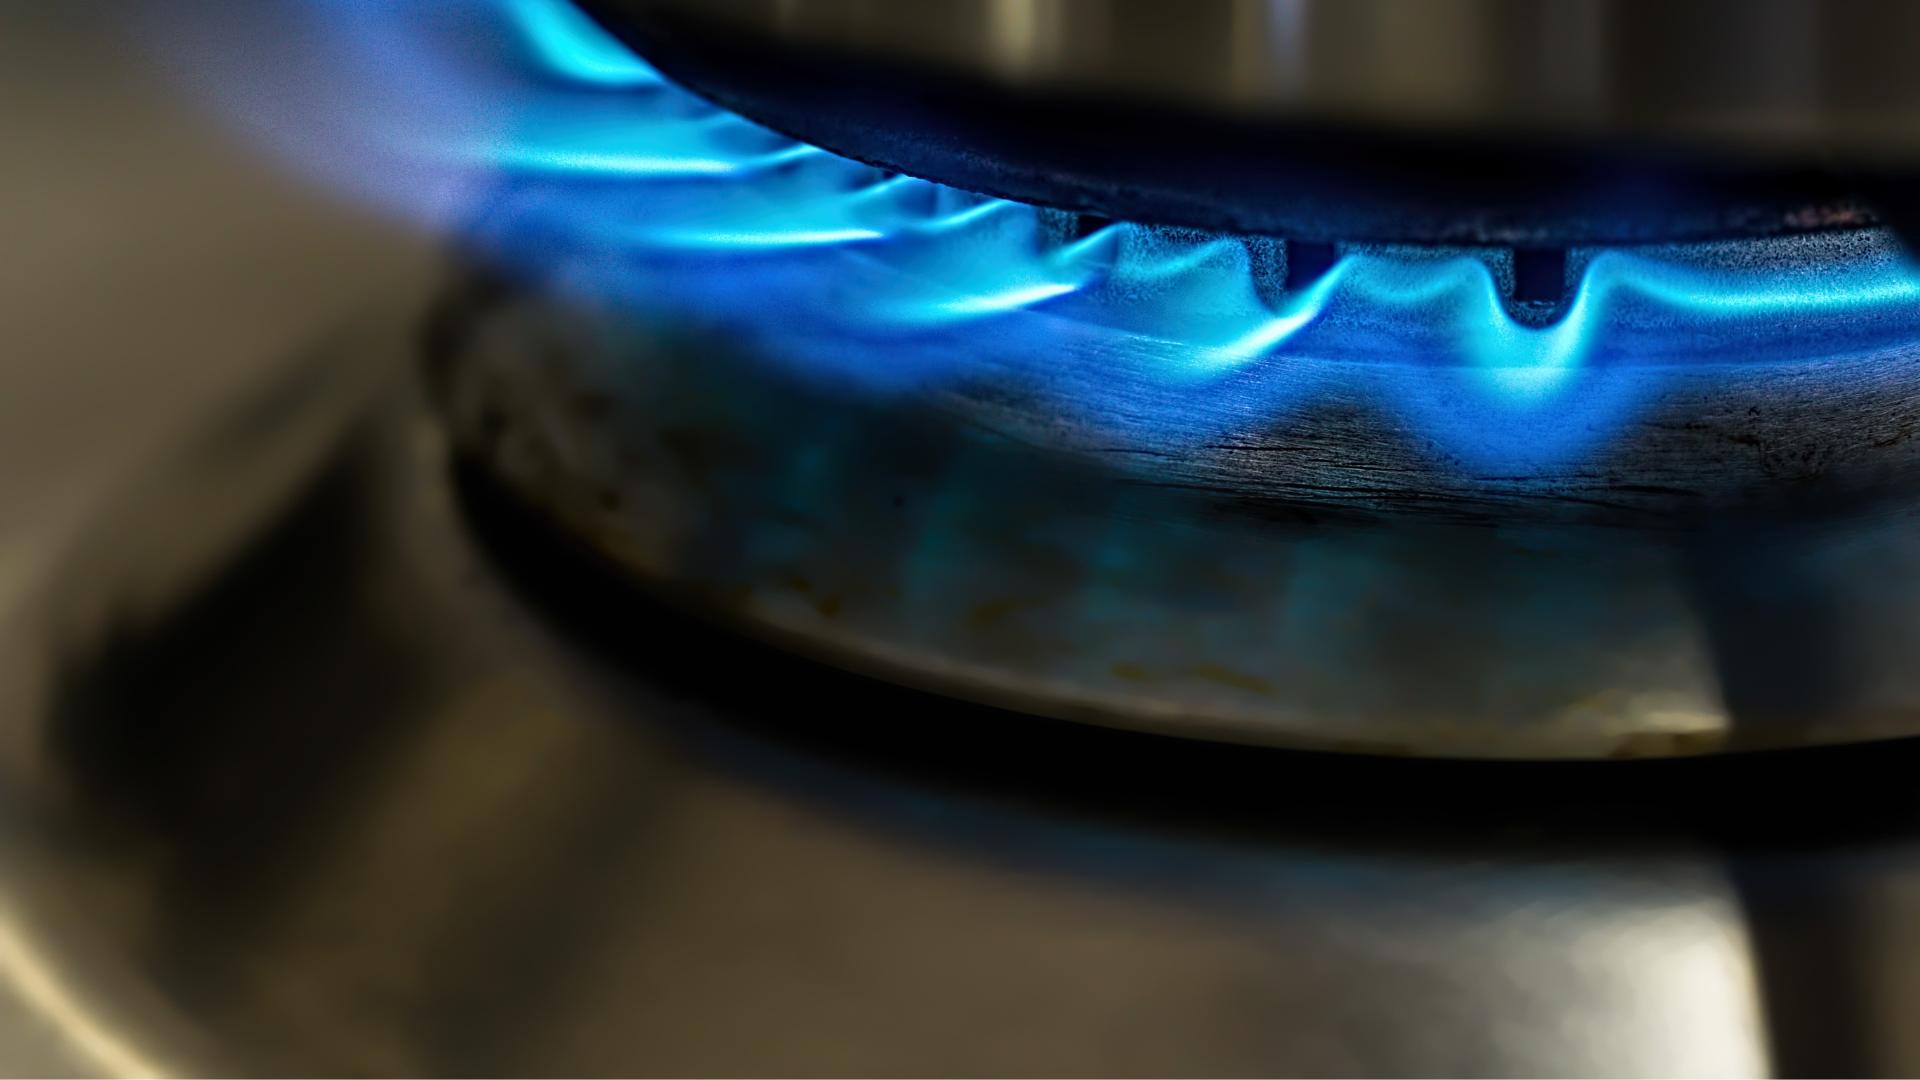 Refundacja podatku VAT dla odbiorców paliw gazowych (dodatek gazowy)